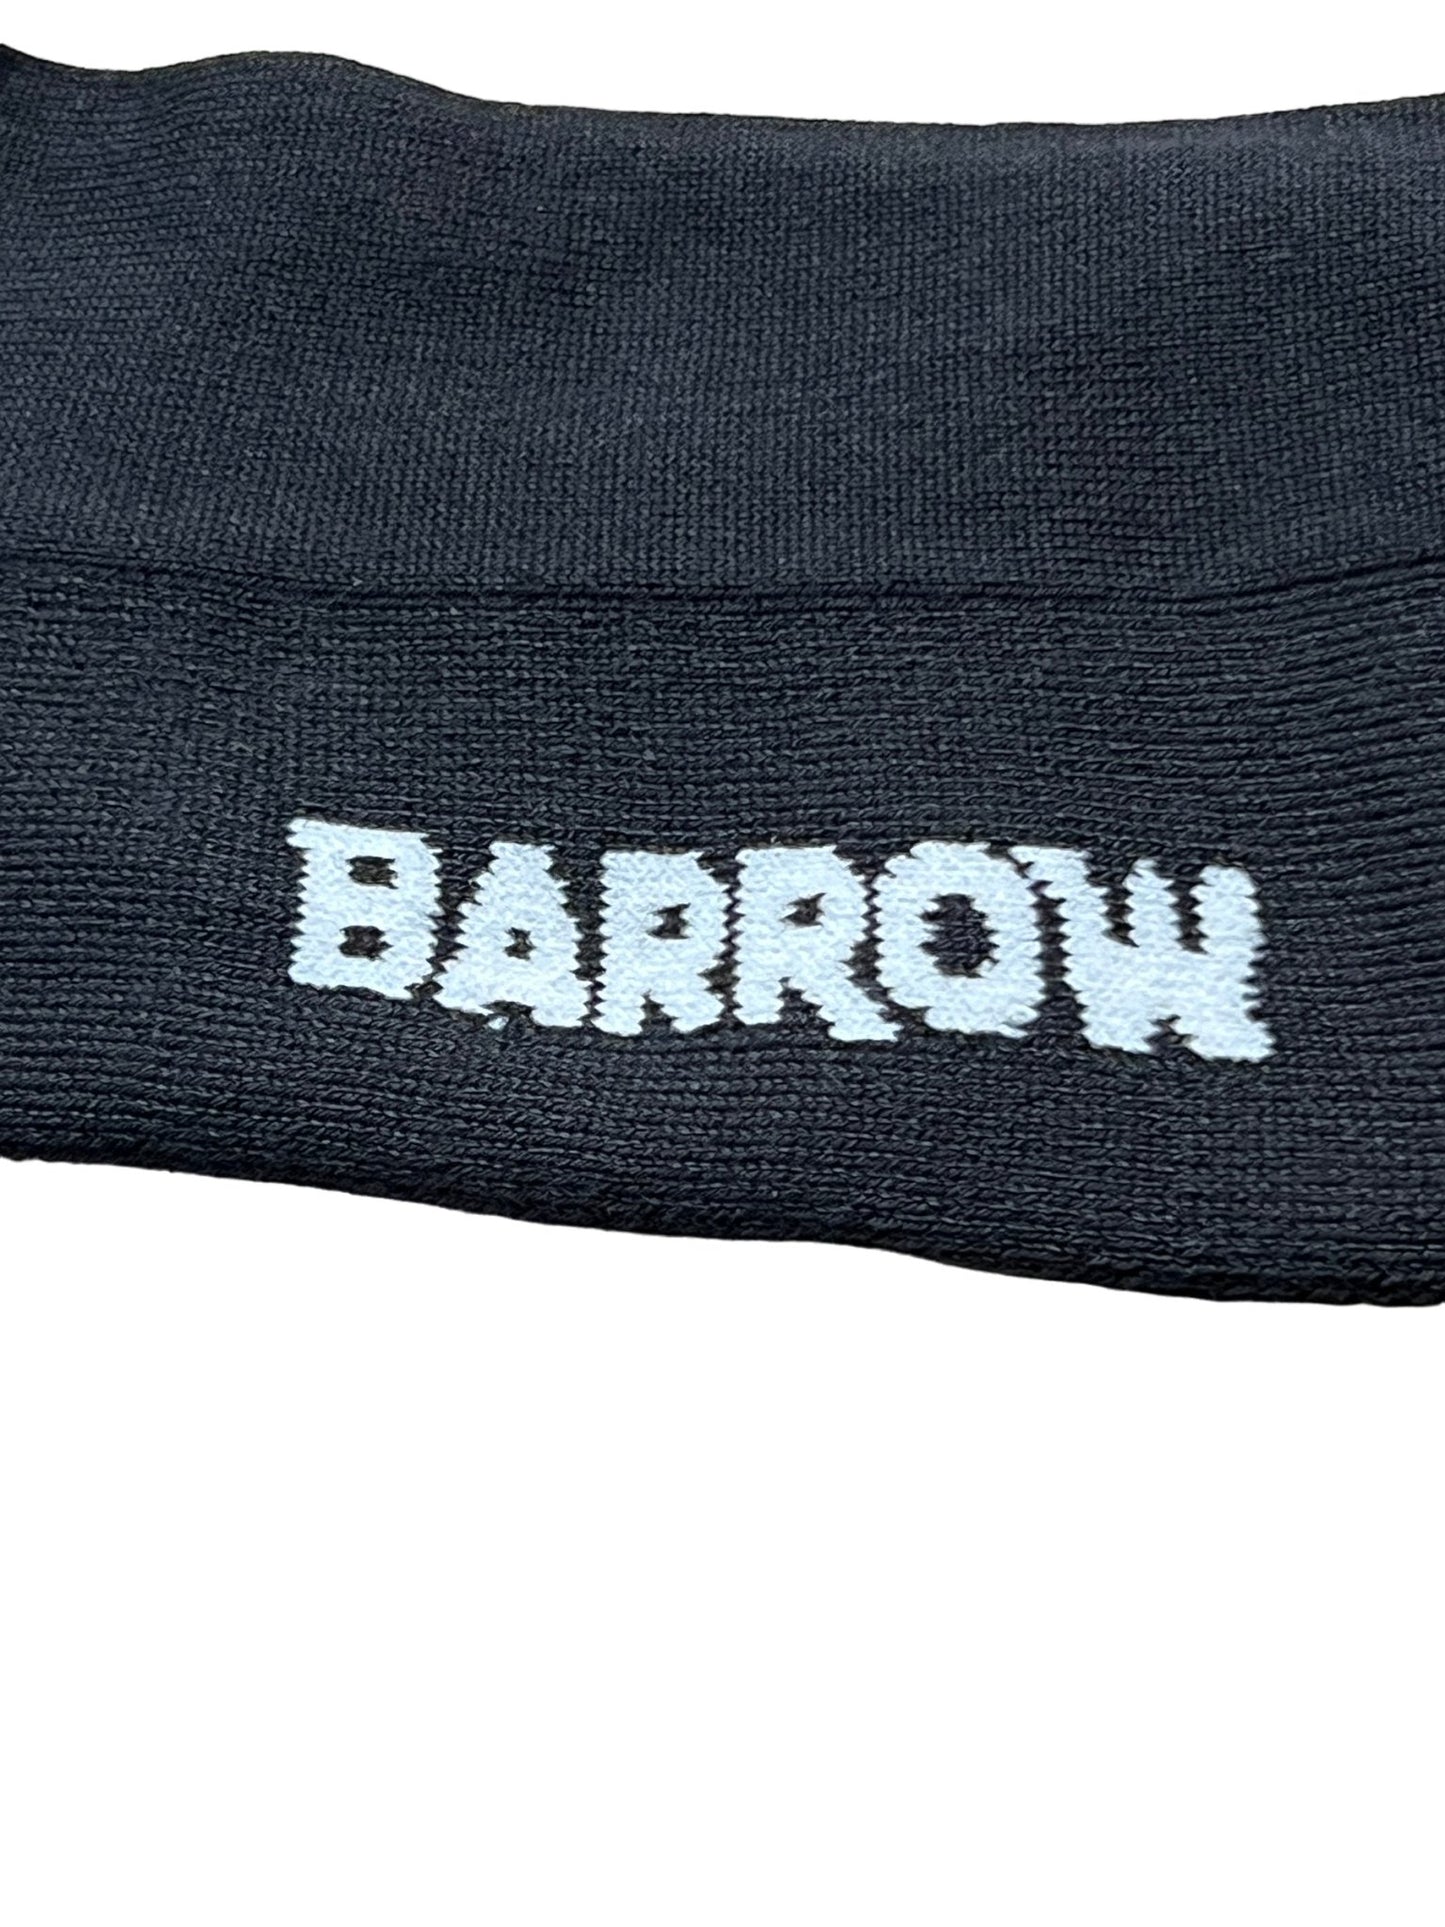 BARROW S4BWUASO140 SOCKS UNISEX